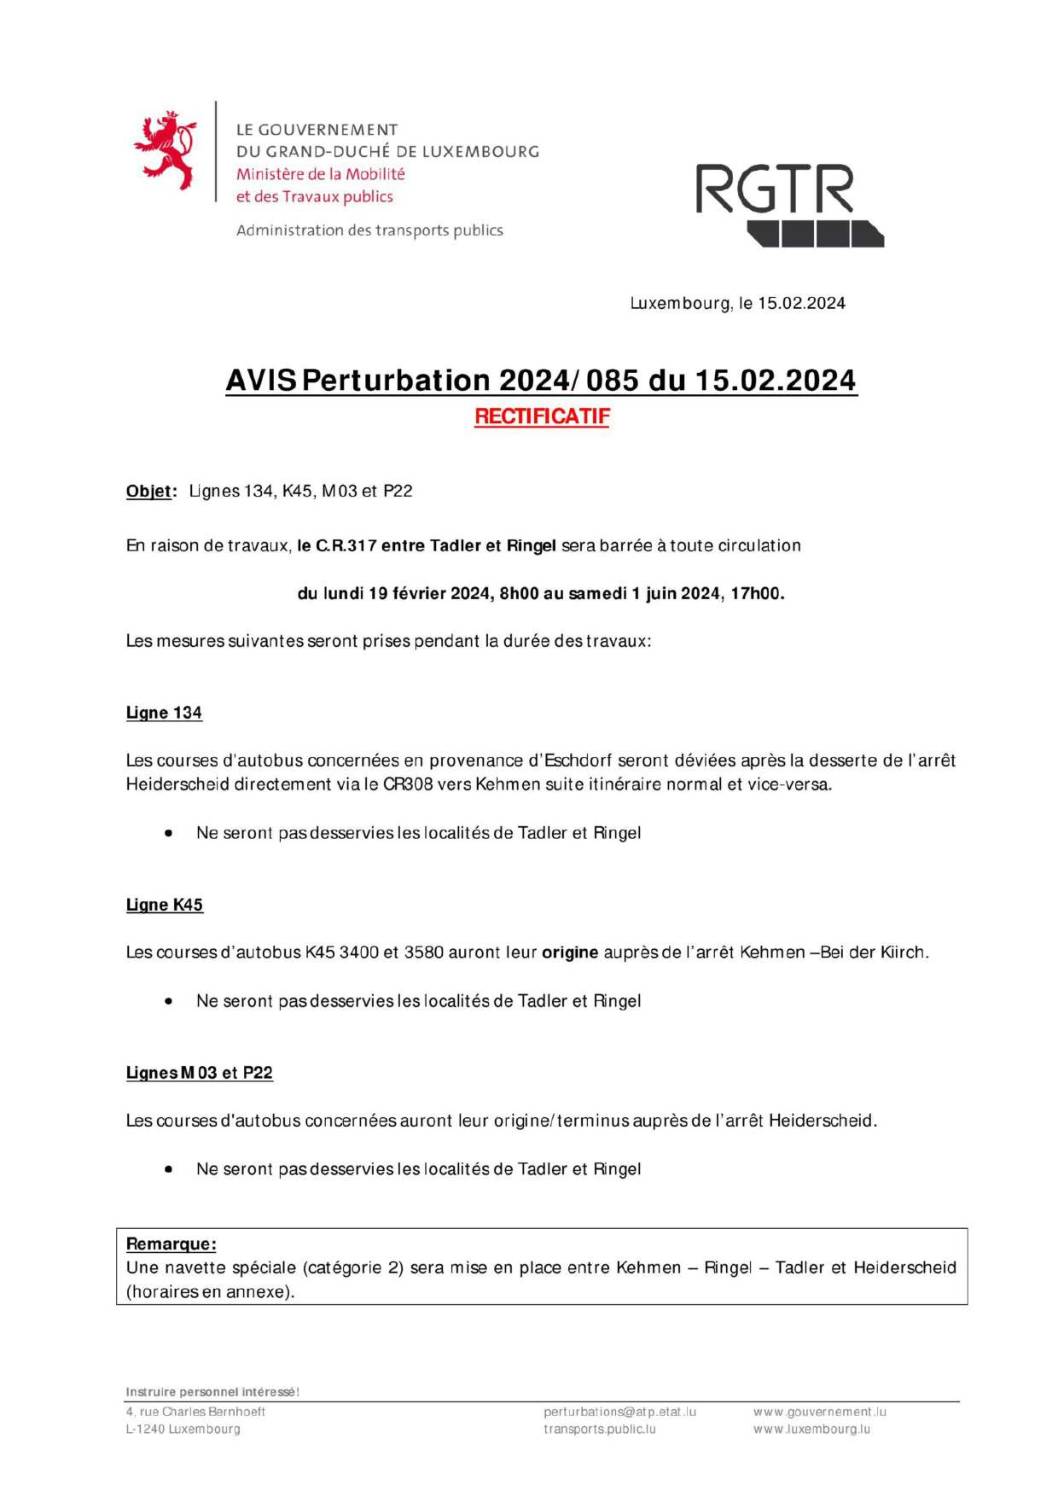 Perturbation 2024/085 - Lignes 134, K45, M03 & P22 (Période du 19.02.2024 au 01.06.2024)